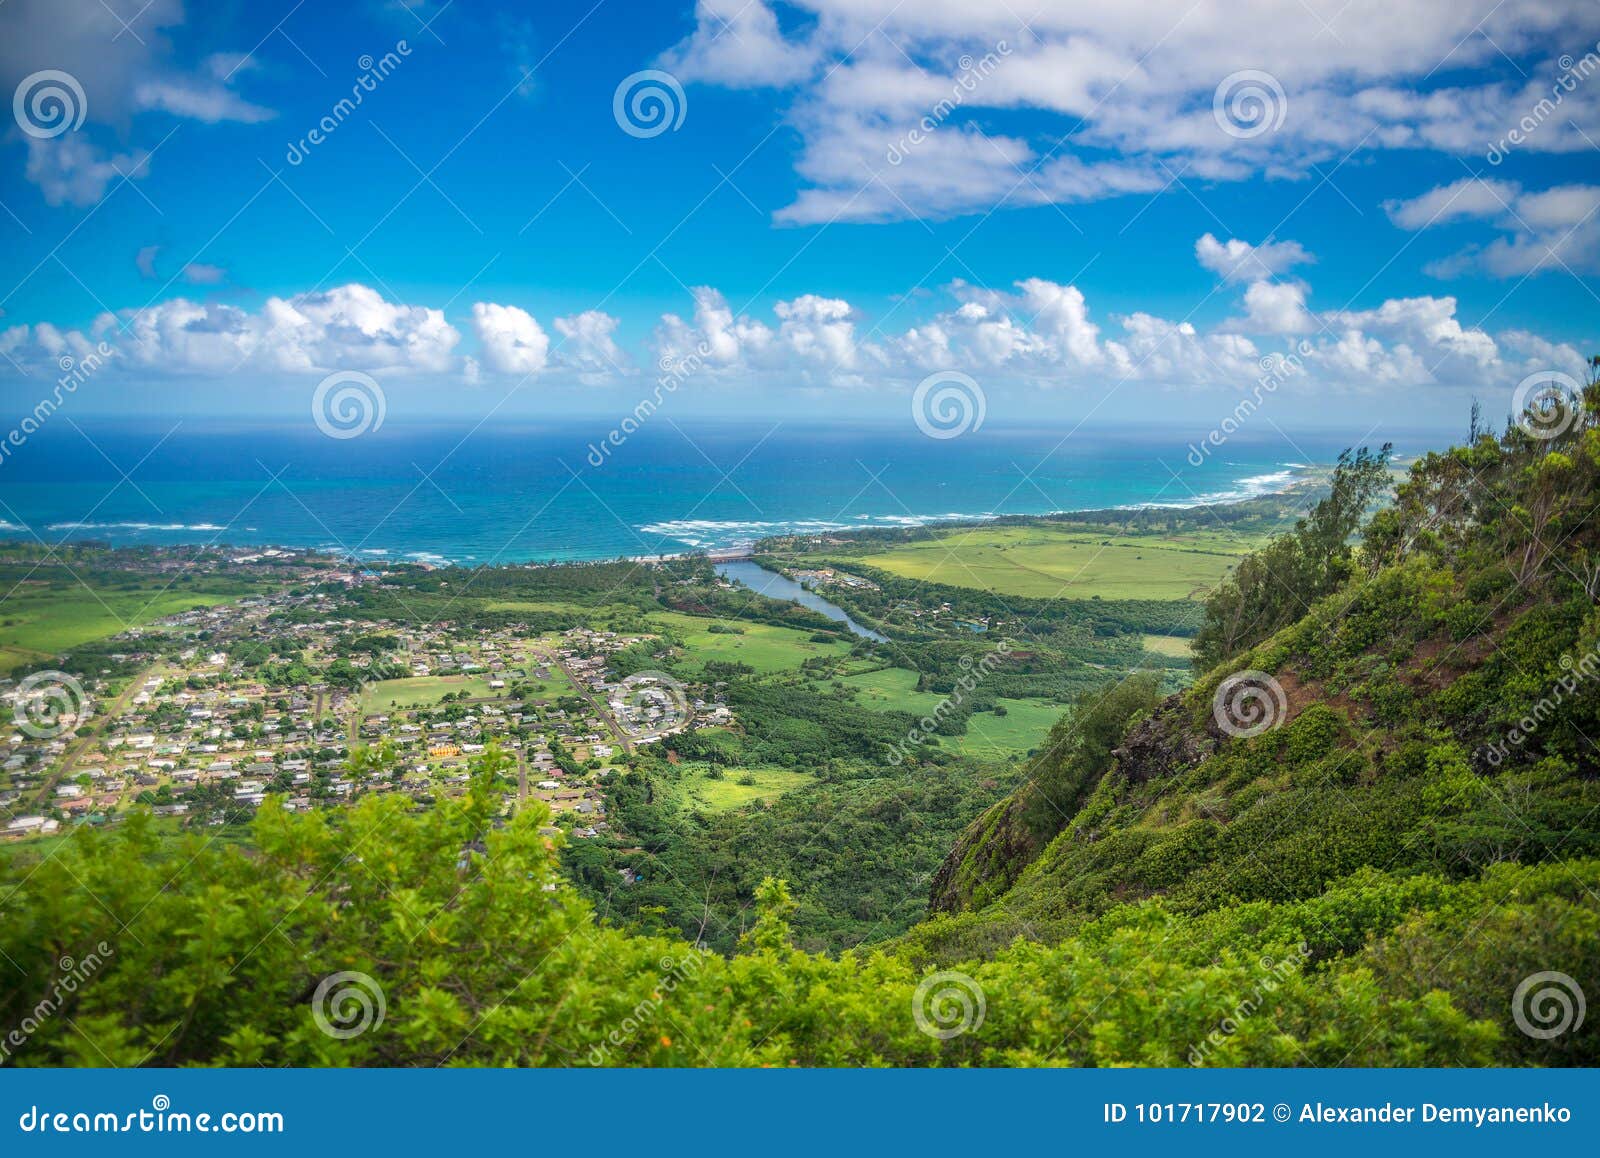 kauai, hawaii -panoramic aerial view